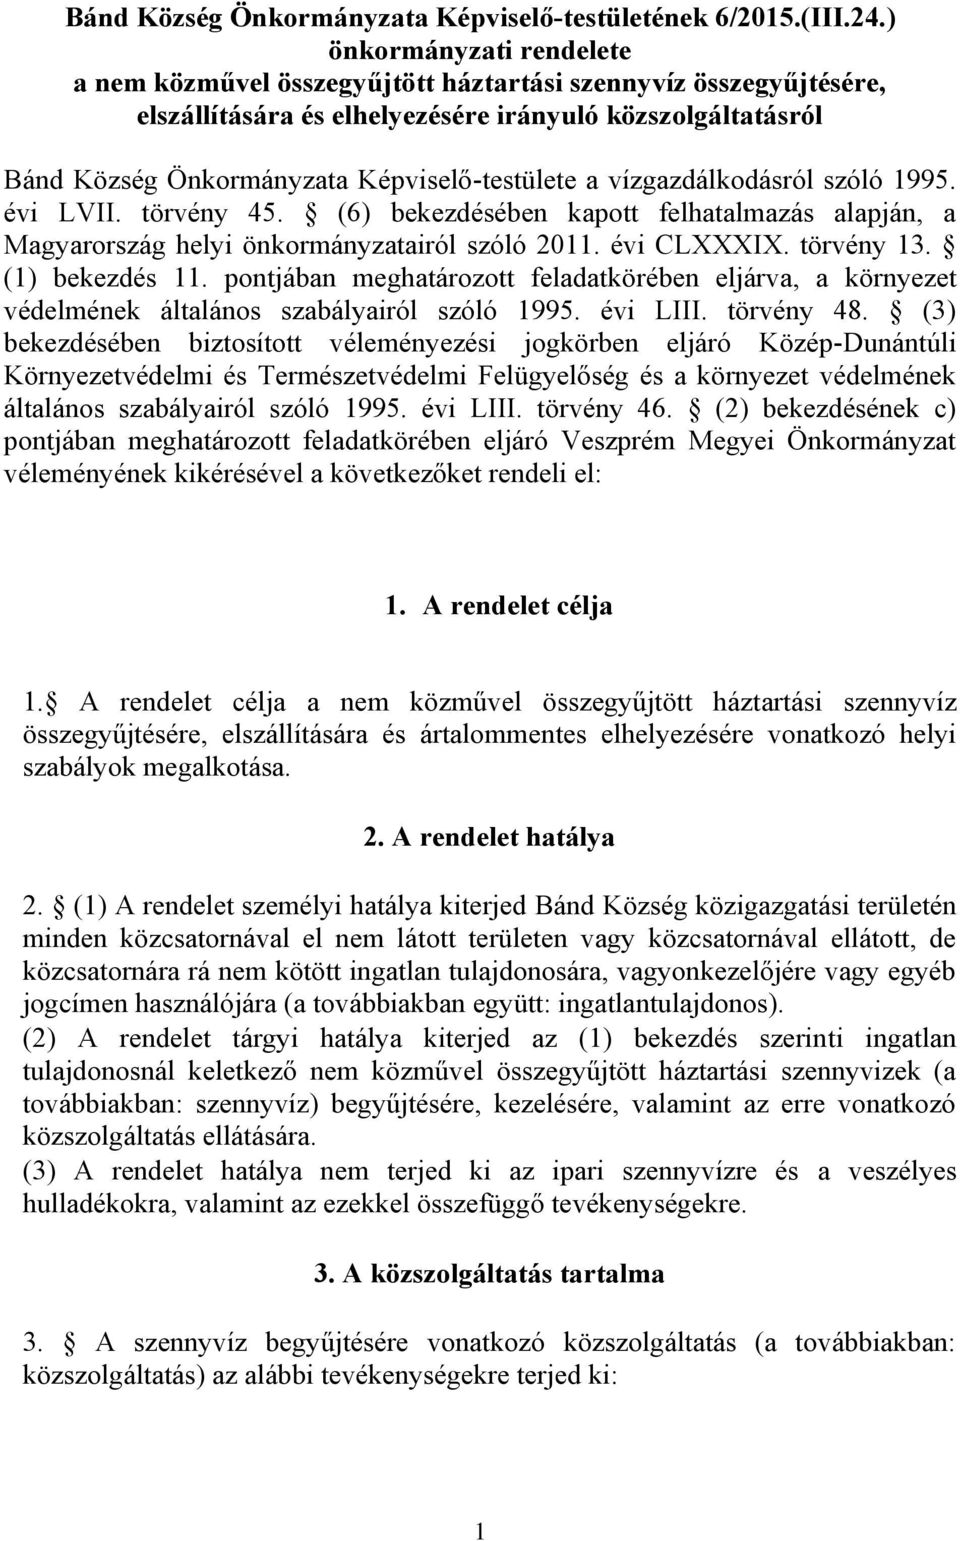 a vízgazdálkodásról szóló 1995. évi LVII. törvény 45. (6) bekezdésében kapott felhatalmazás alapján, a Magyarország helyi önkormányzatairól szóló 2011. évi CLXXXIX. törvény 13. (1) bekezdés 11.